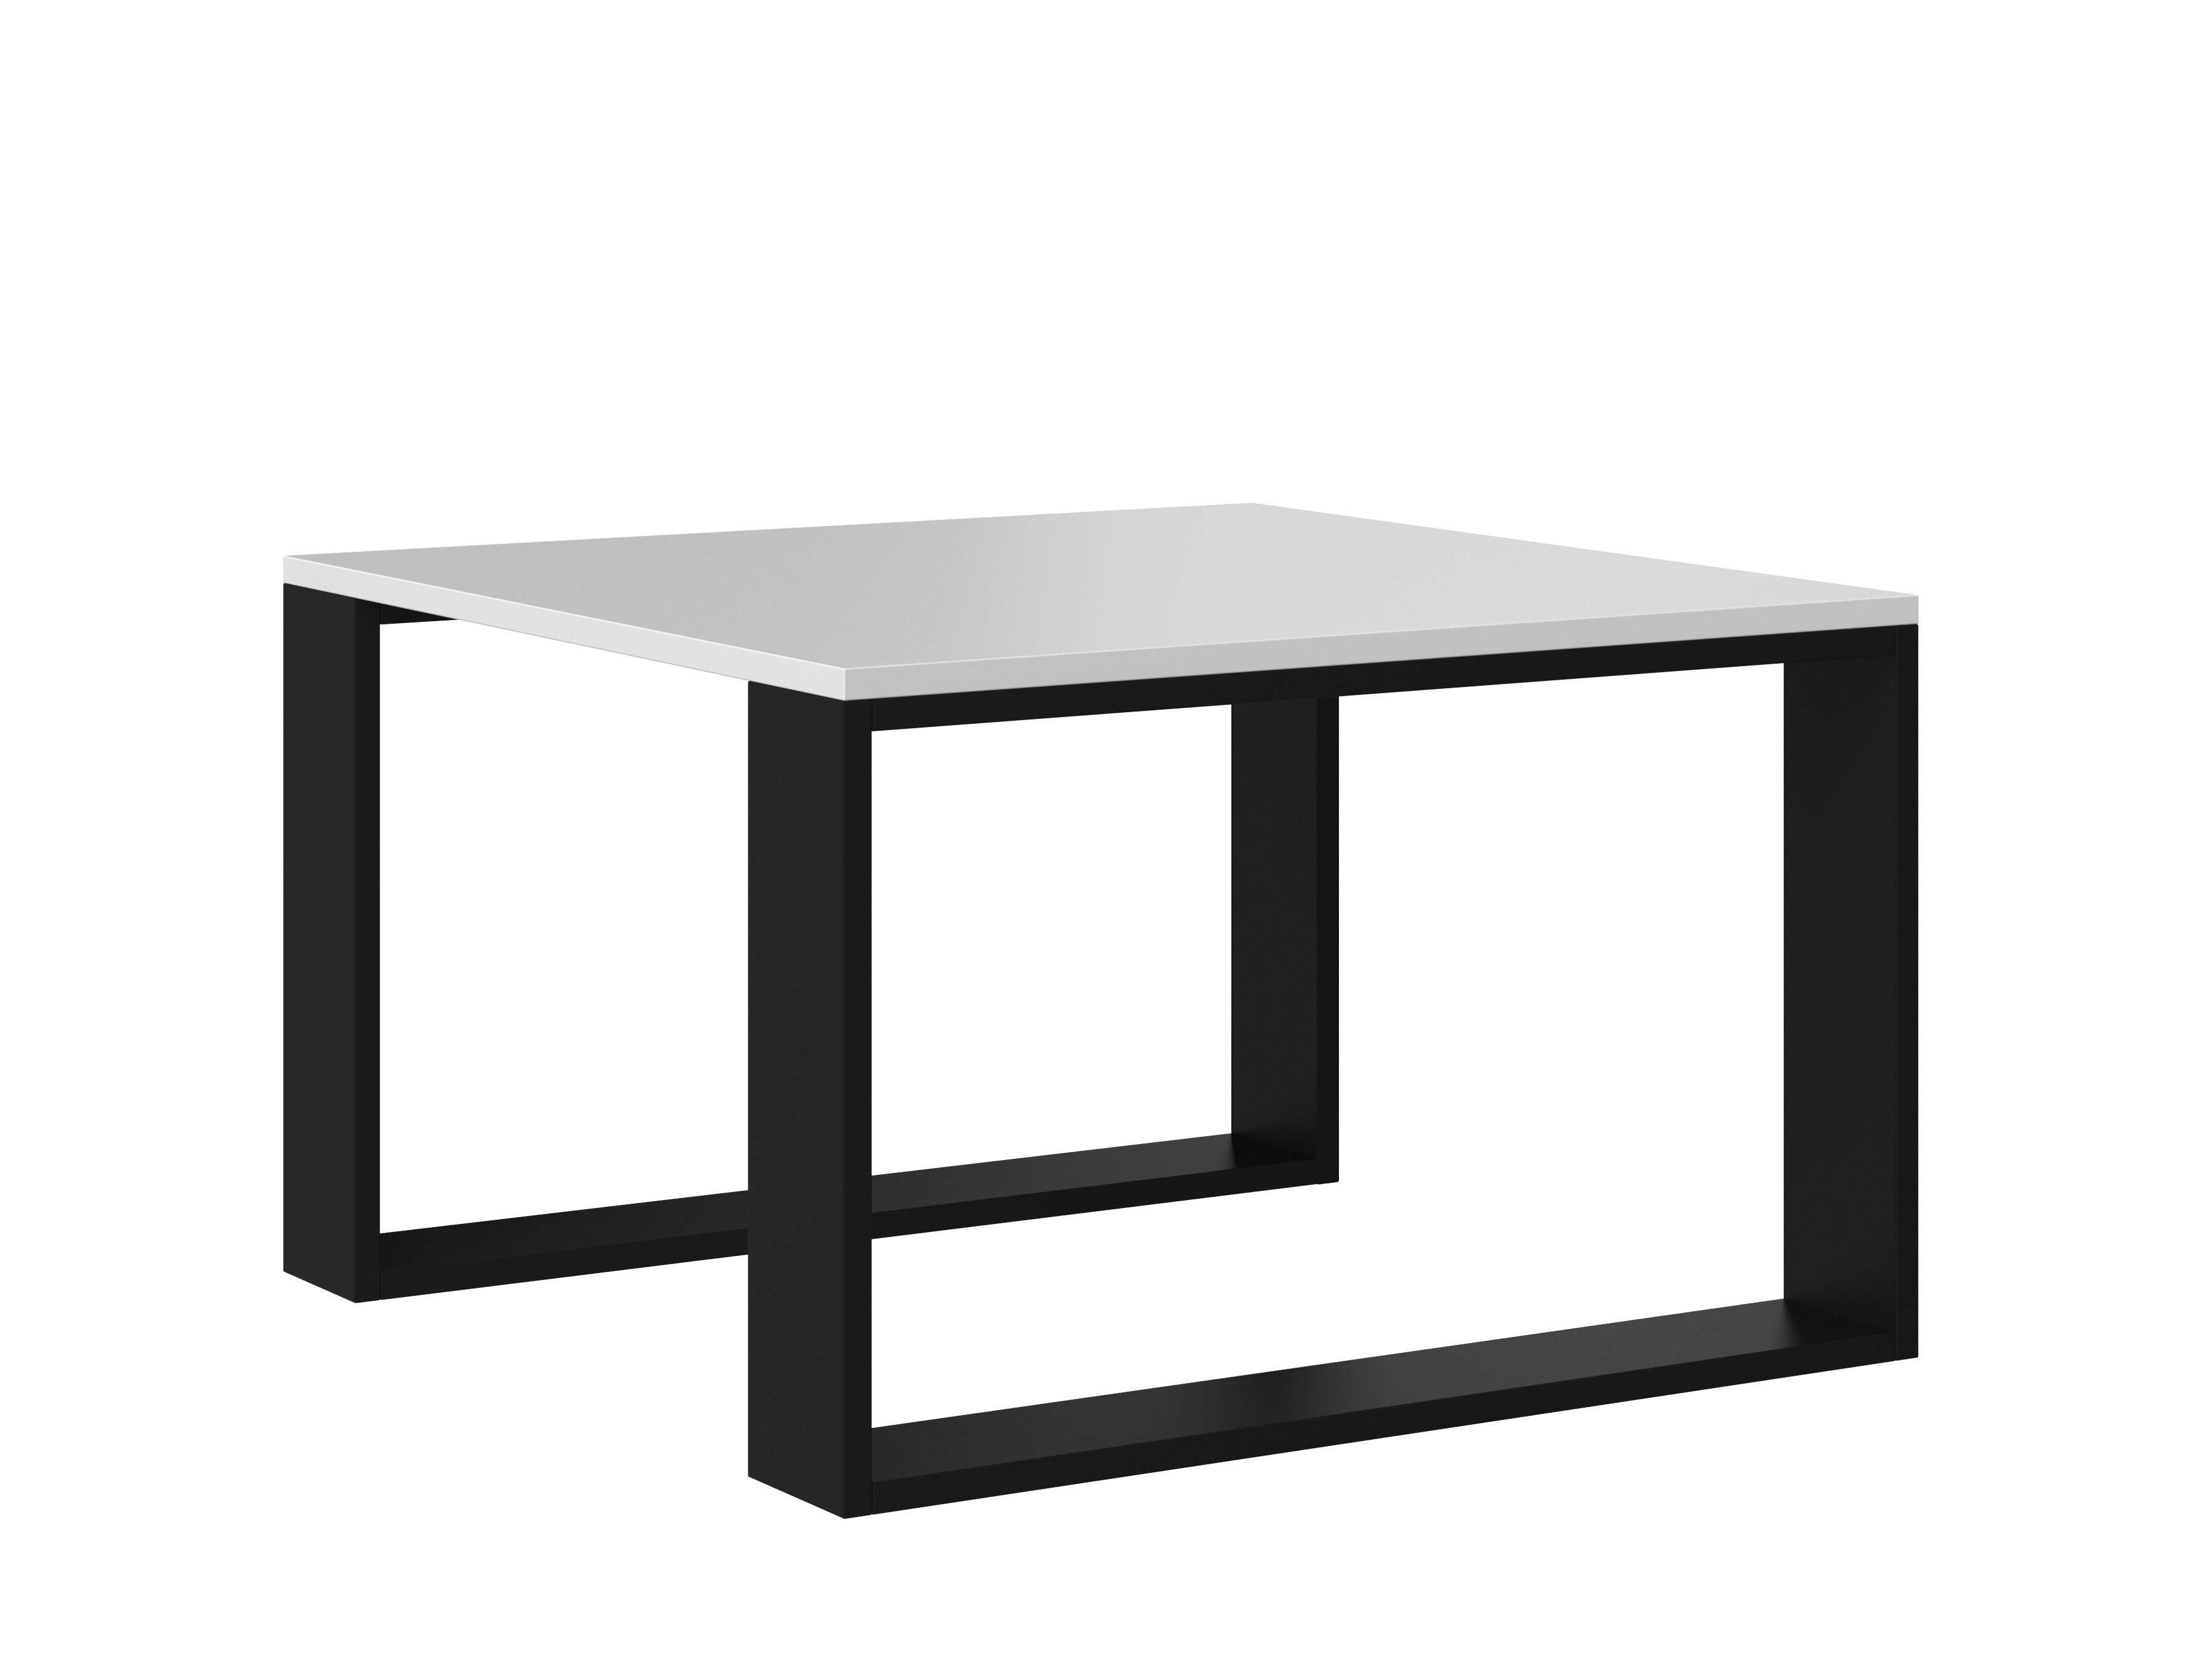 Home Collective Couchtisch Beistelltisch Loft Design, kratzfeste Oberfläche, Wohnzimmer Couch, Tisch Beistell 67x67x40 cm (LxBxH), weiß schwarz weiß-schwarz